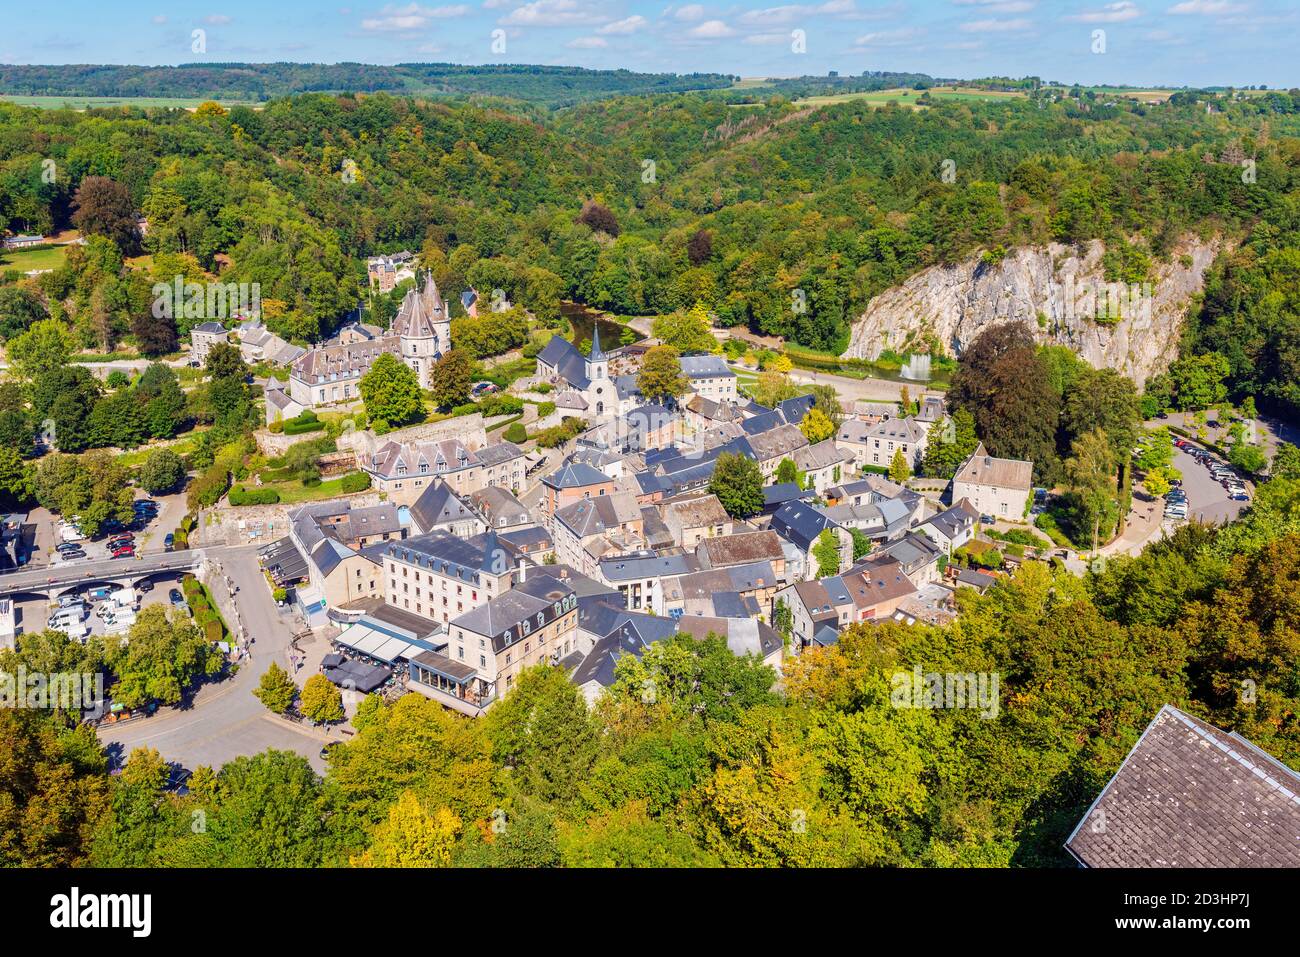 Vista en ángulo alto sobre el pueblo de Durbuy en el Provincia de Luxemburgo y Región de las Ardenas de Valonia Bélgica Foto de stock